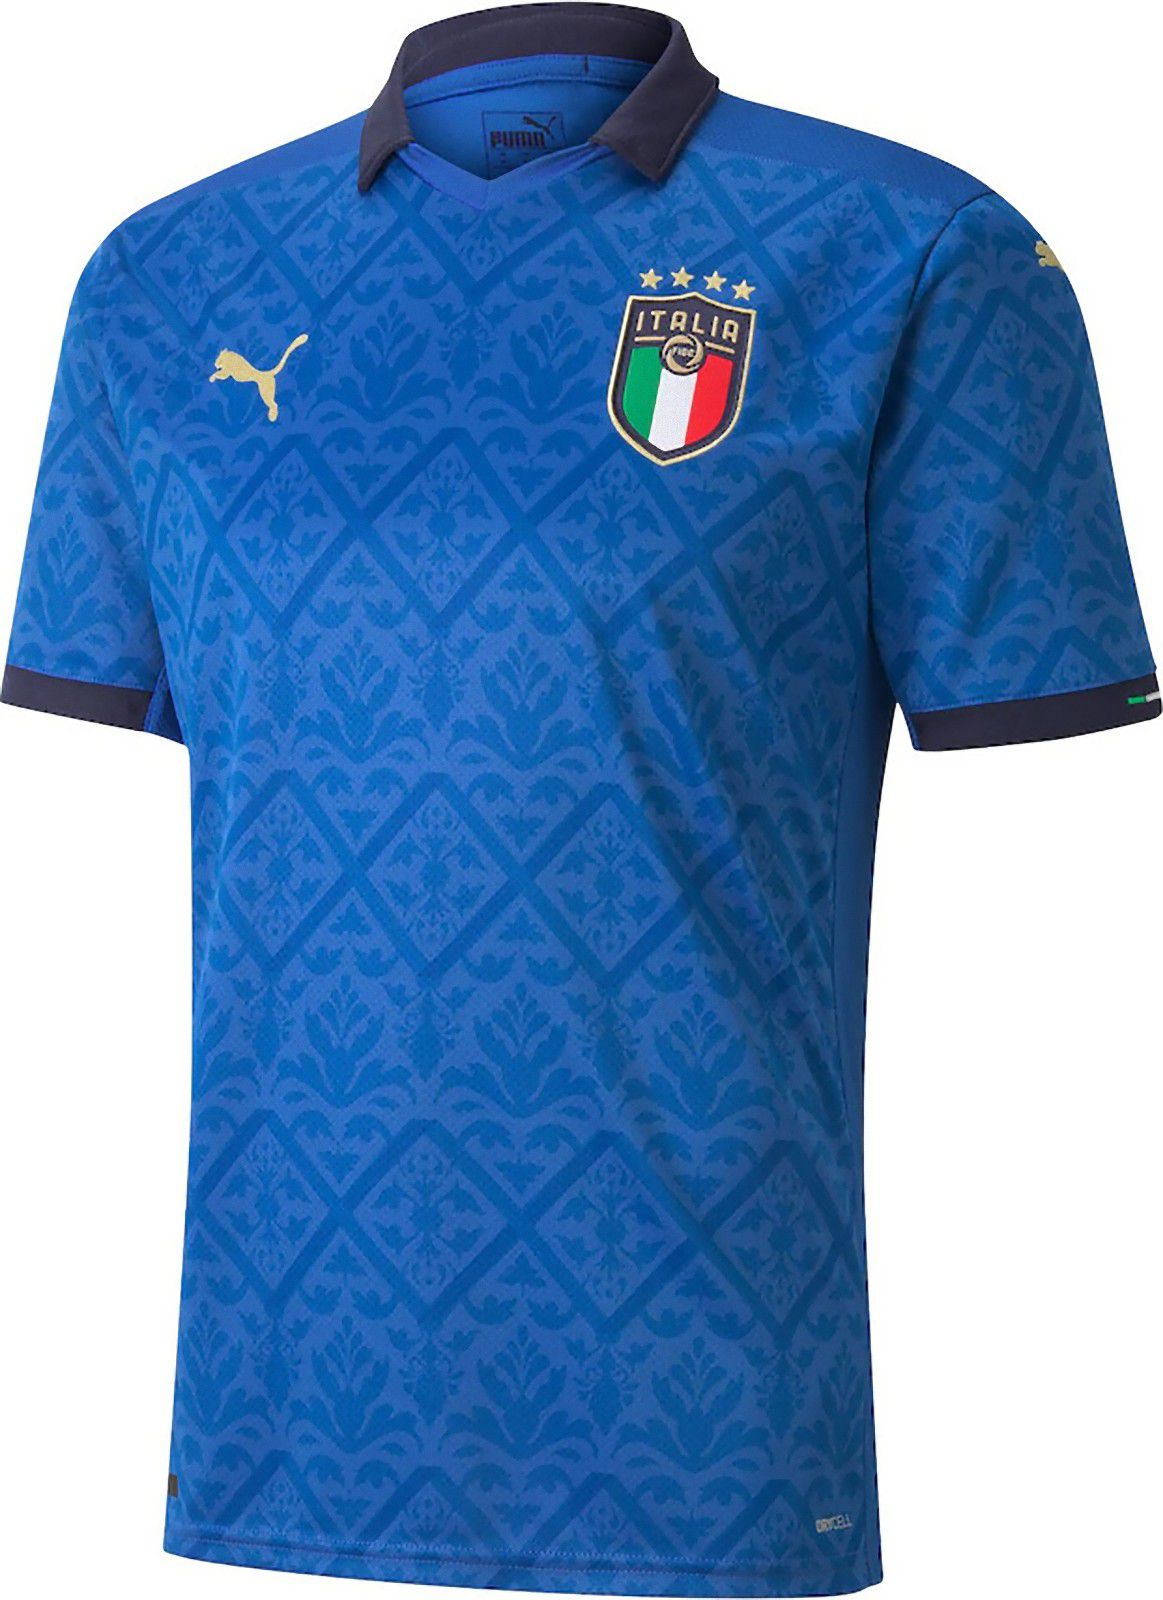 イタリア代表 Euro ユニフォーム ユニ11